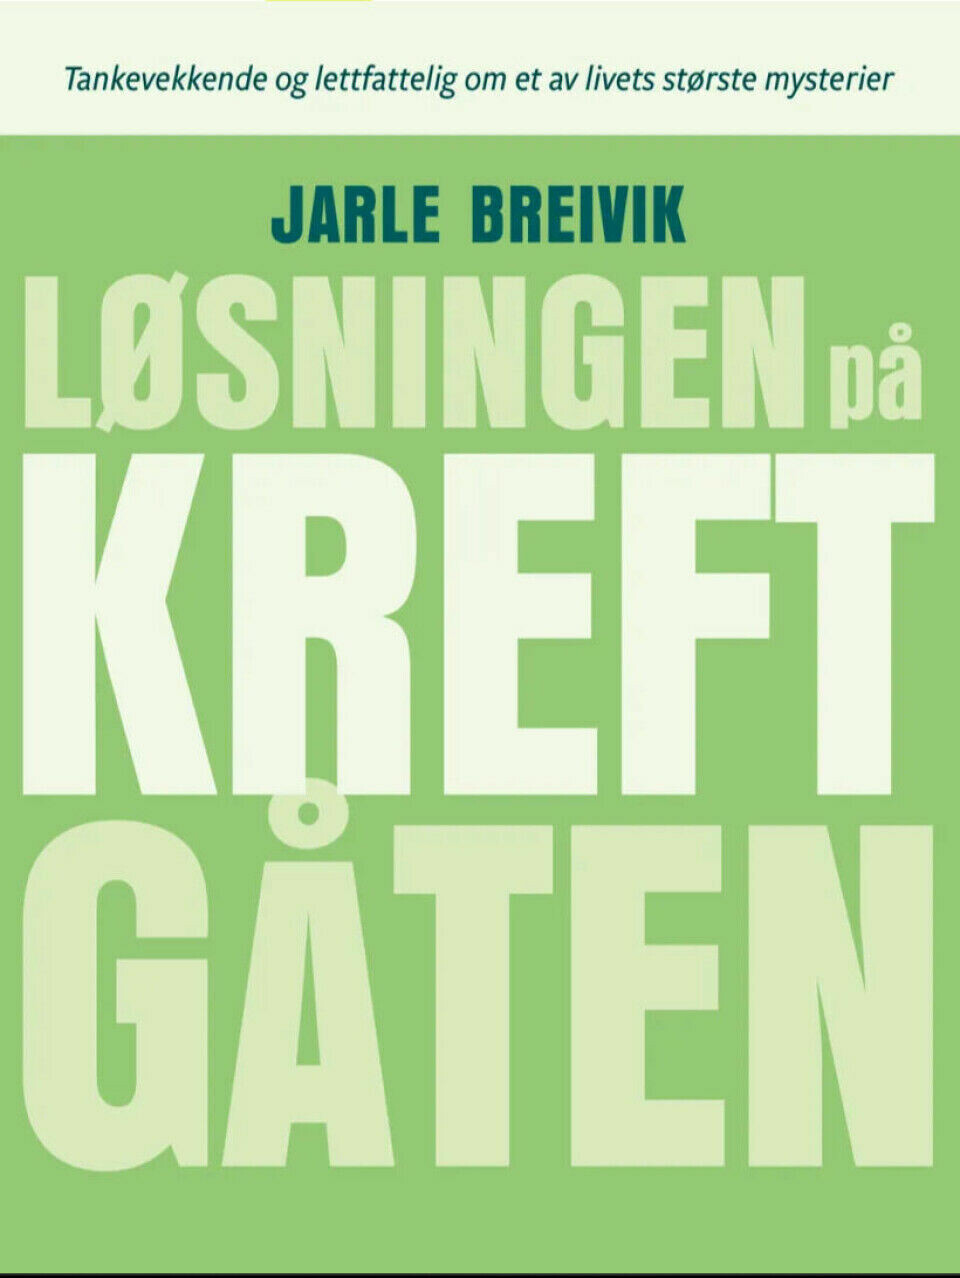 The book Løsningen på kreftgåten (The solution to the cancer puzzle) was written by Jarle Breivik and was published in 2022.